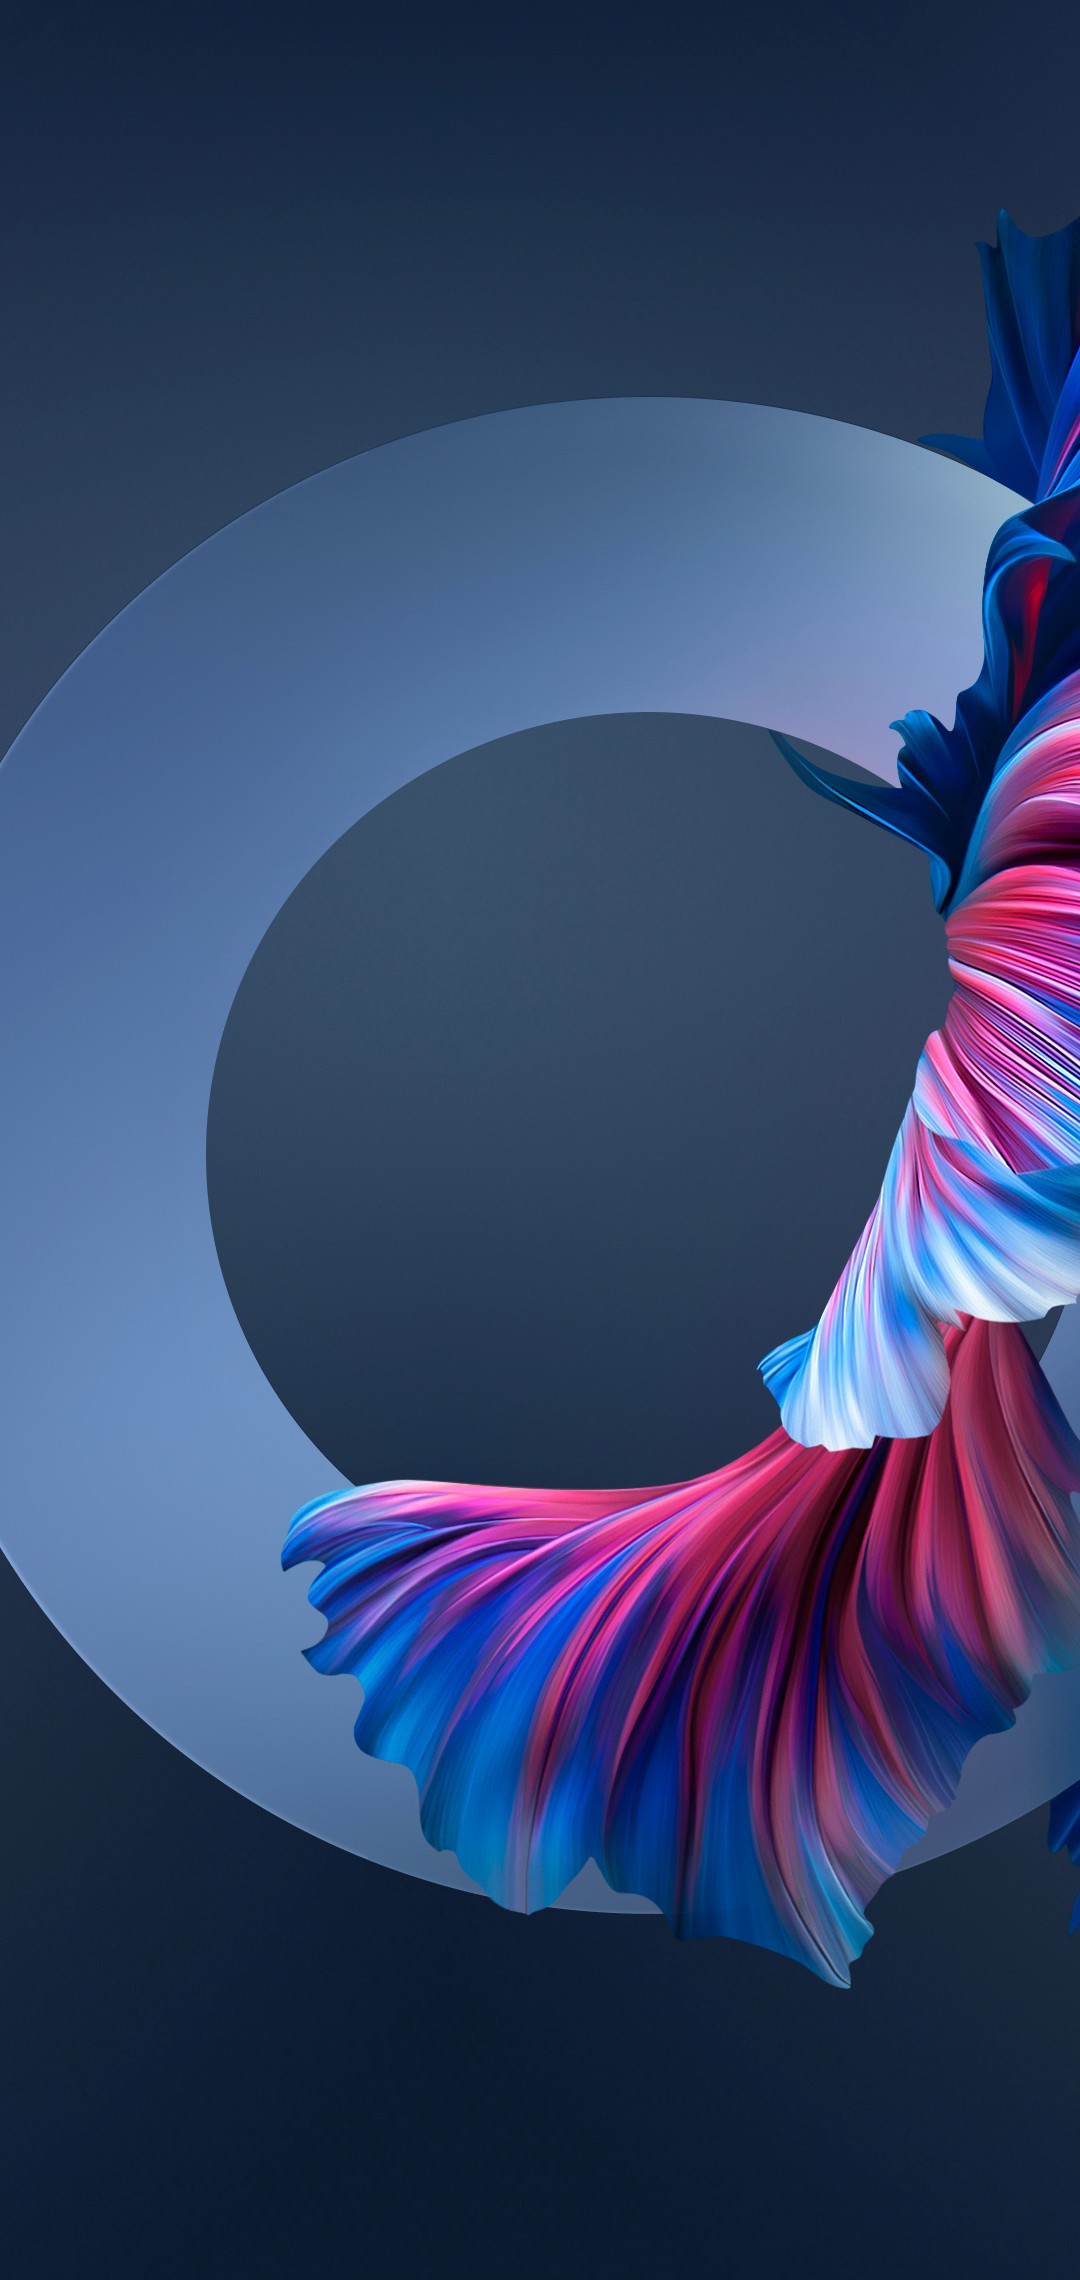 青 ピンク 金魚の尾 綺麗 Zenfone Max Pro M2 Androidスマホ壁紙 待ち受け スマラン